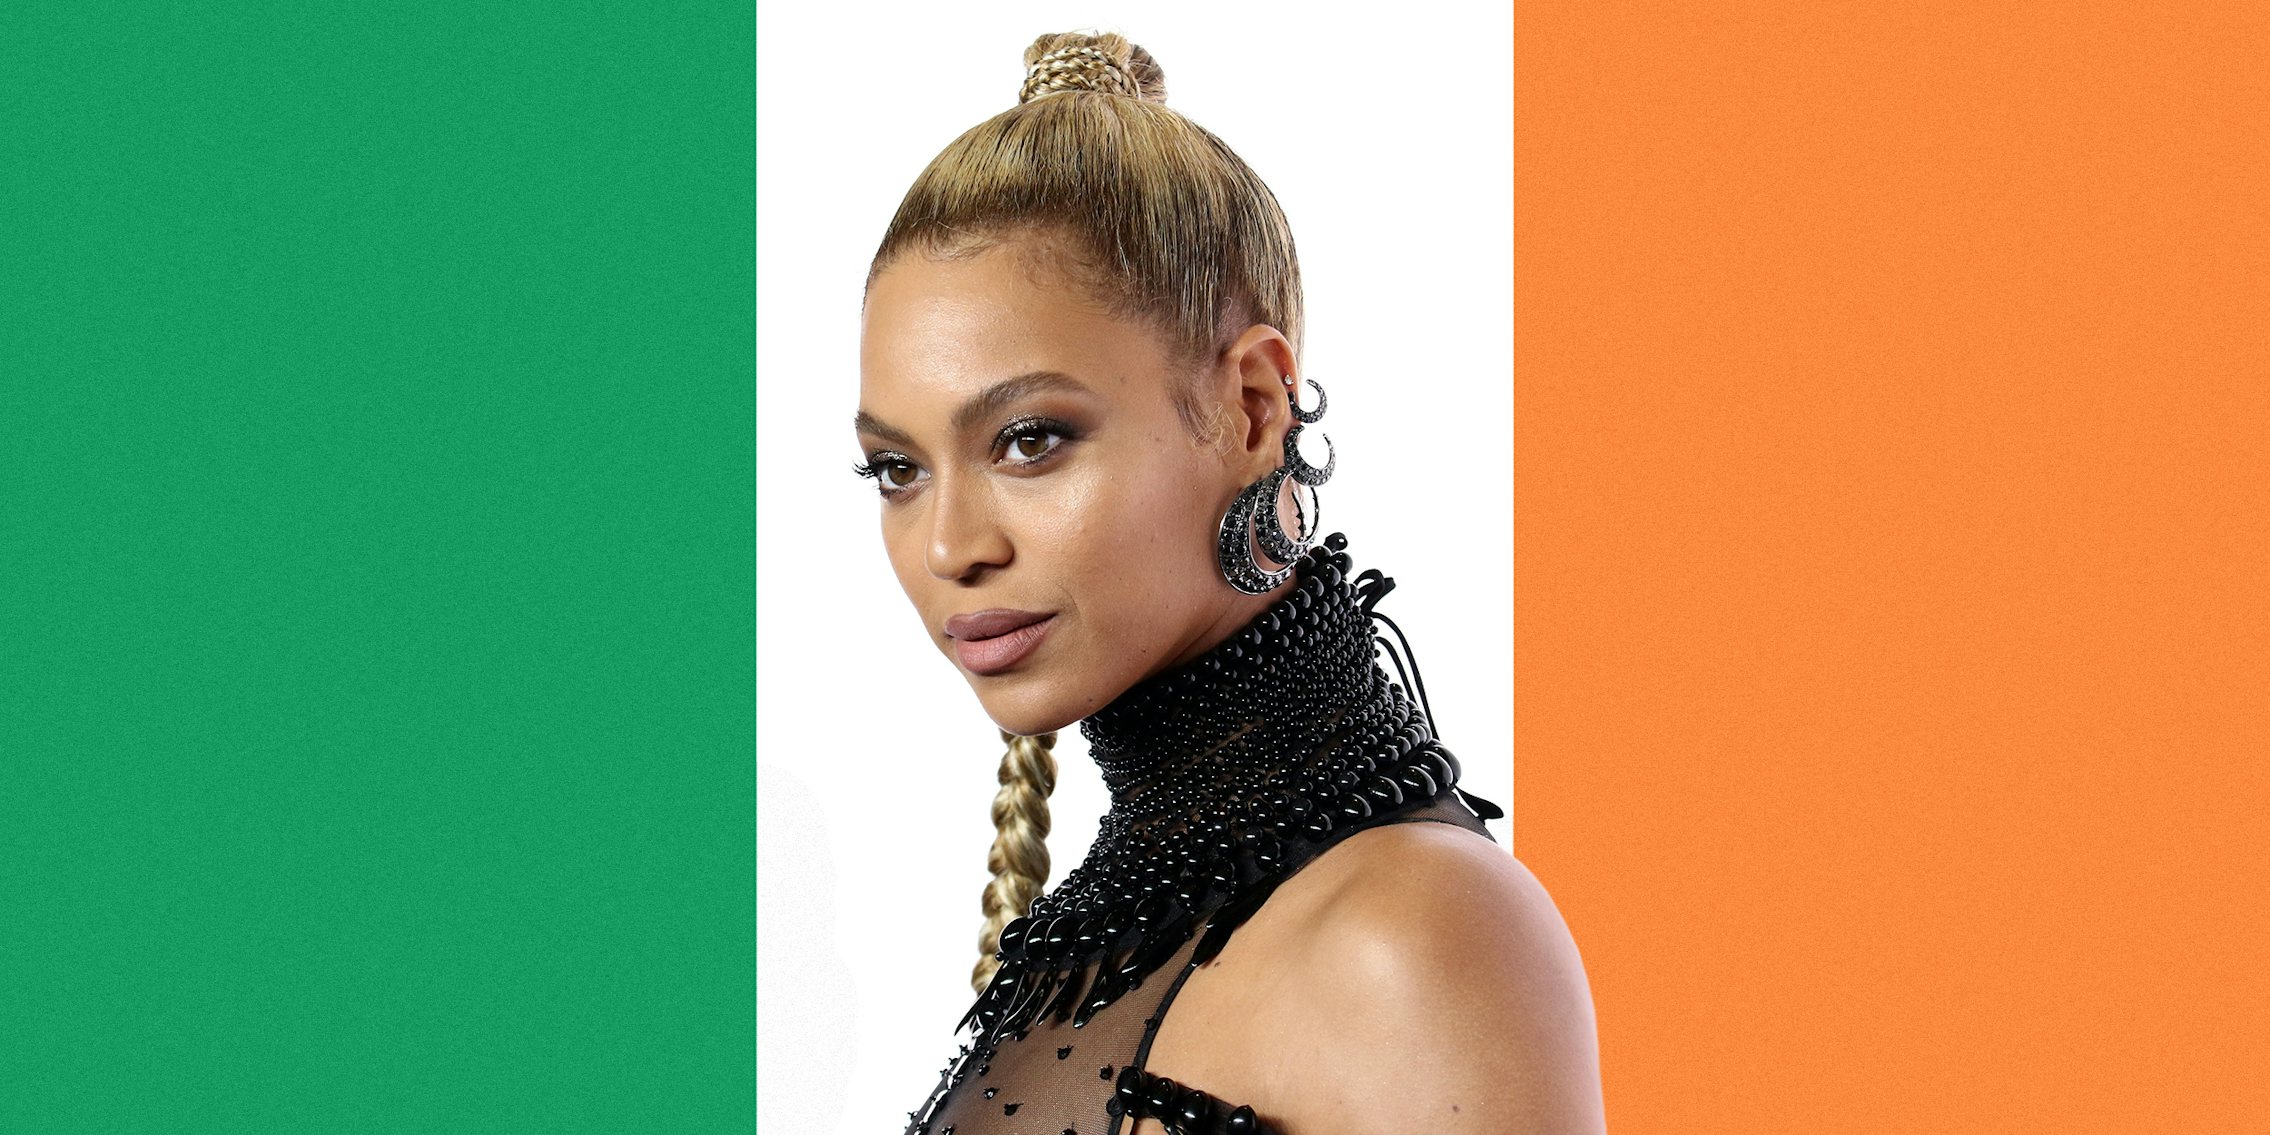 Beyonce and the Irish flag